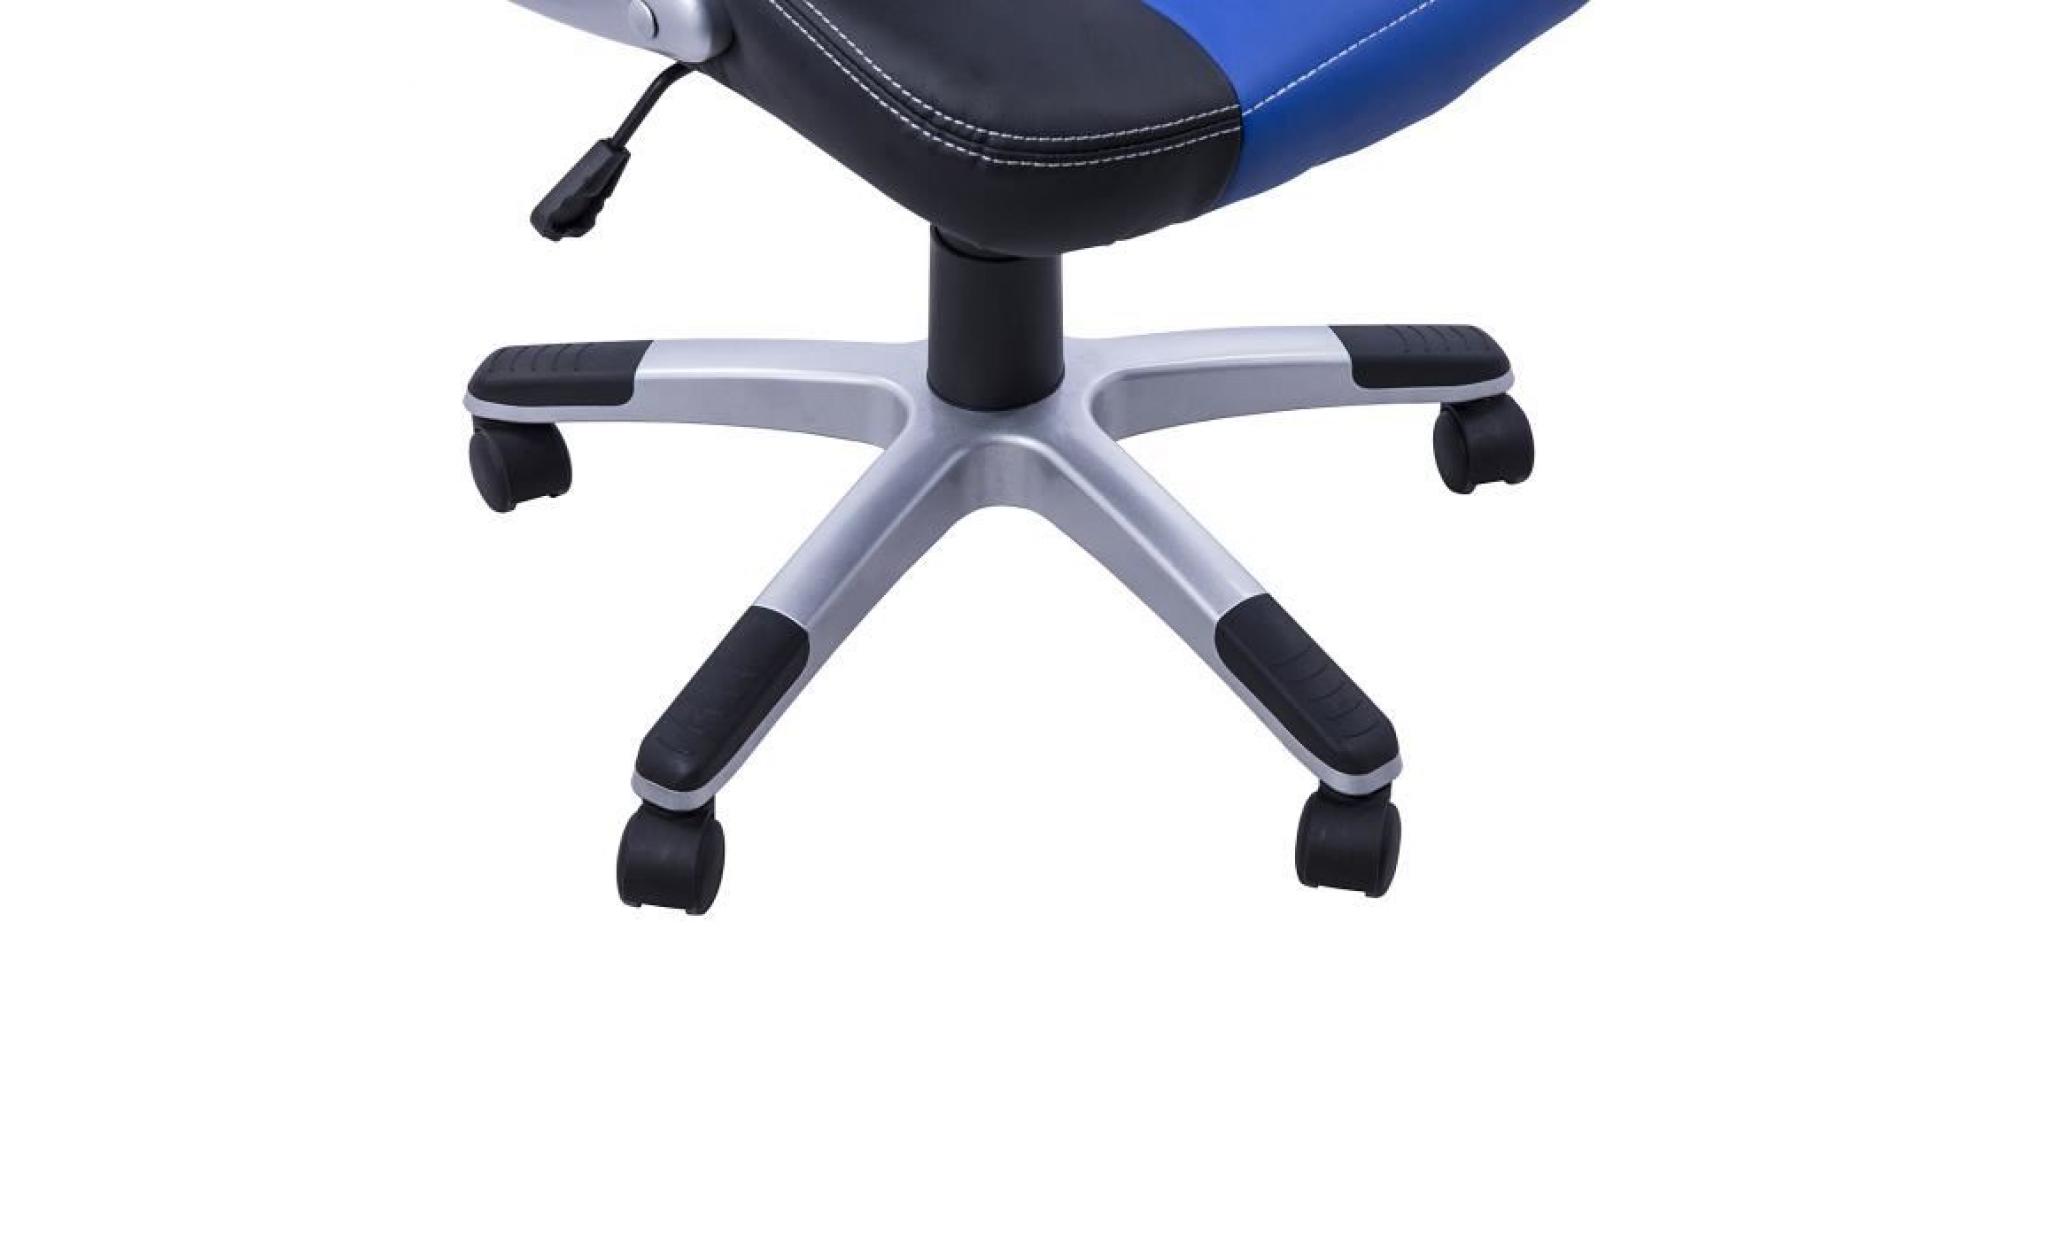 chaise/fauteuil de bureau pivotante hauteur réglable surface en pu facile à nettoyer noir et bleu 91 pas cher